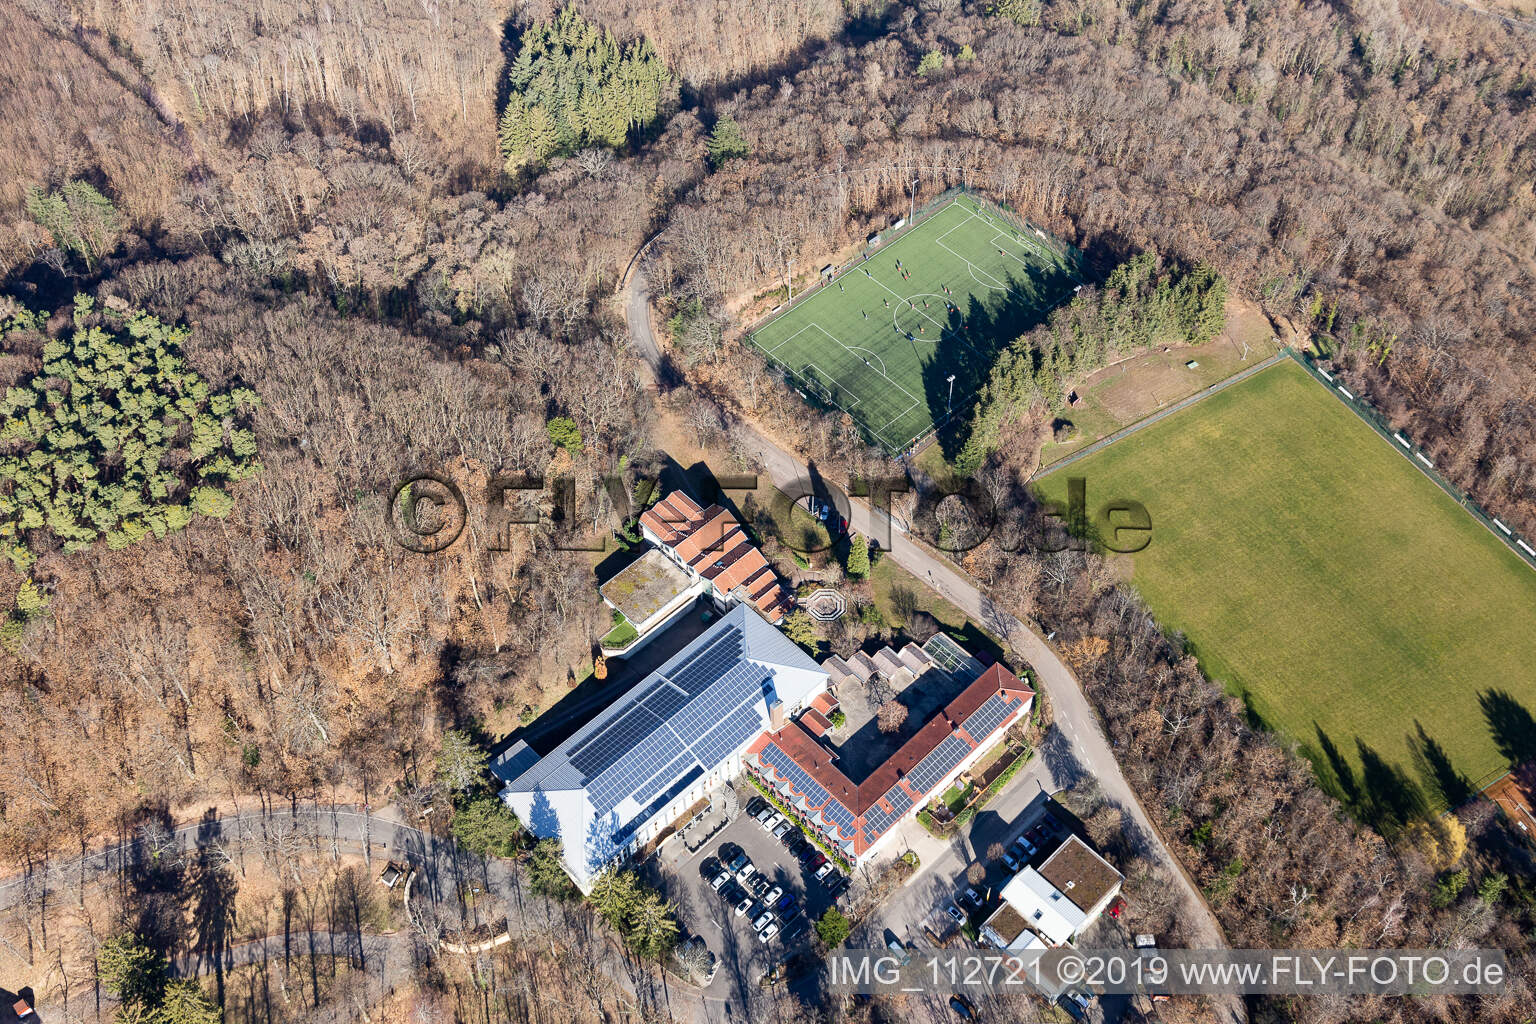 Aerial view of Sports school, SW-Deutscher FV eV in Edenkoben in the state Rhineland-Palatinate, Germany